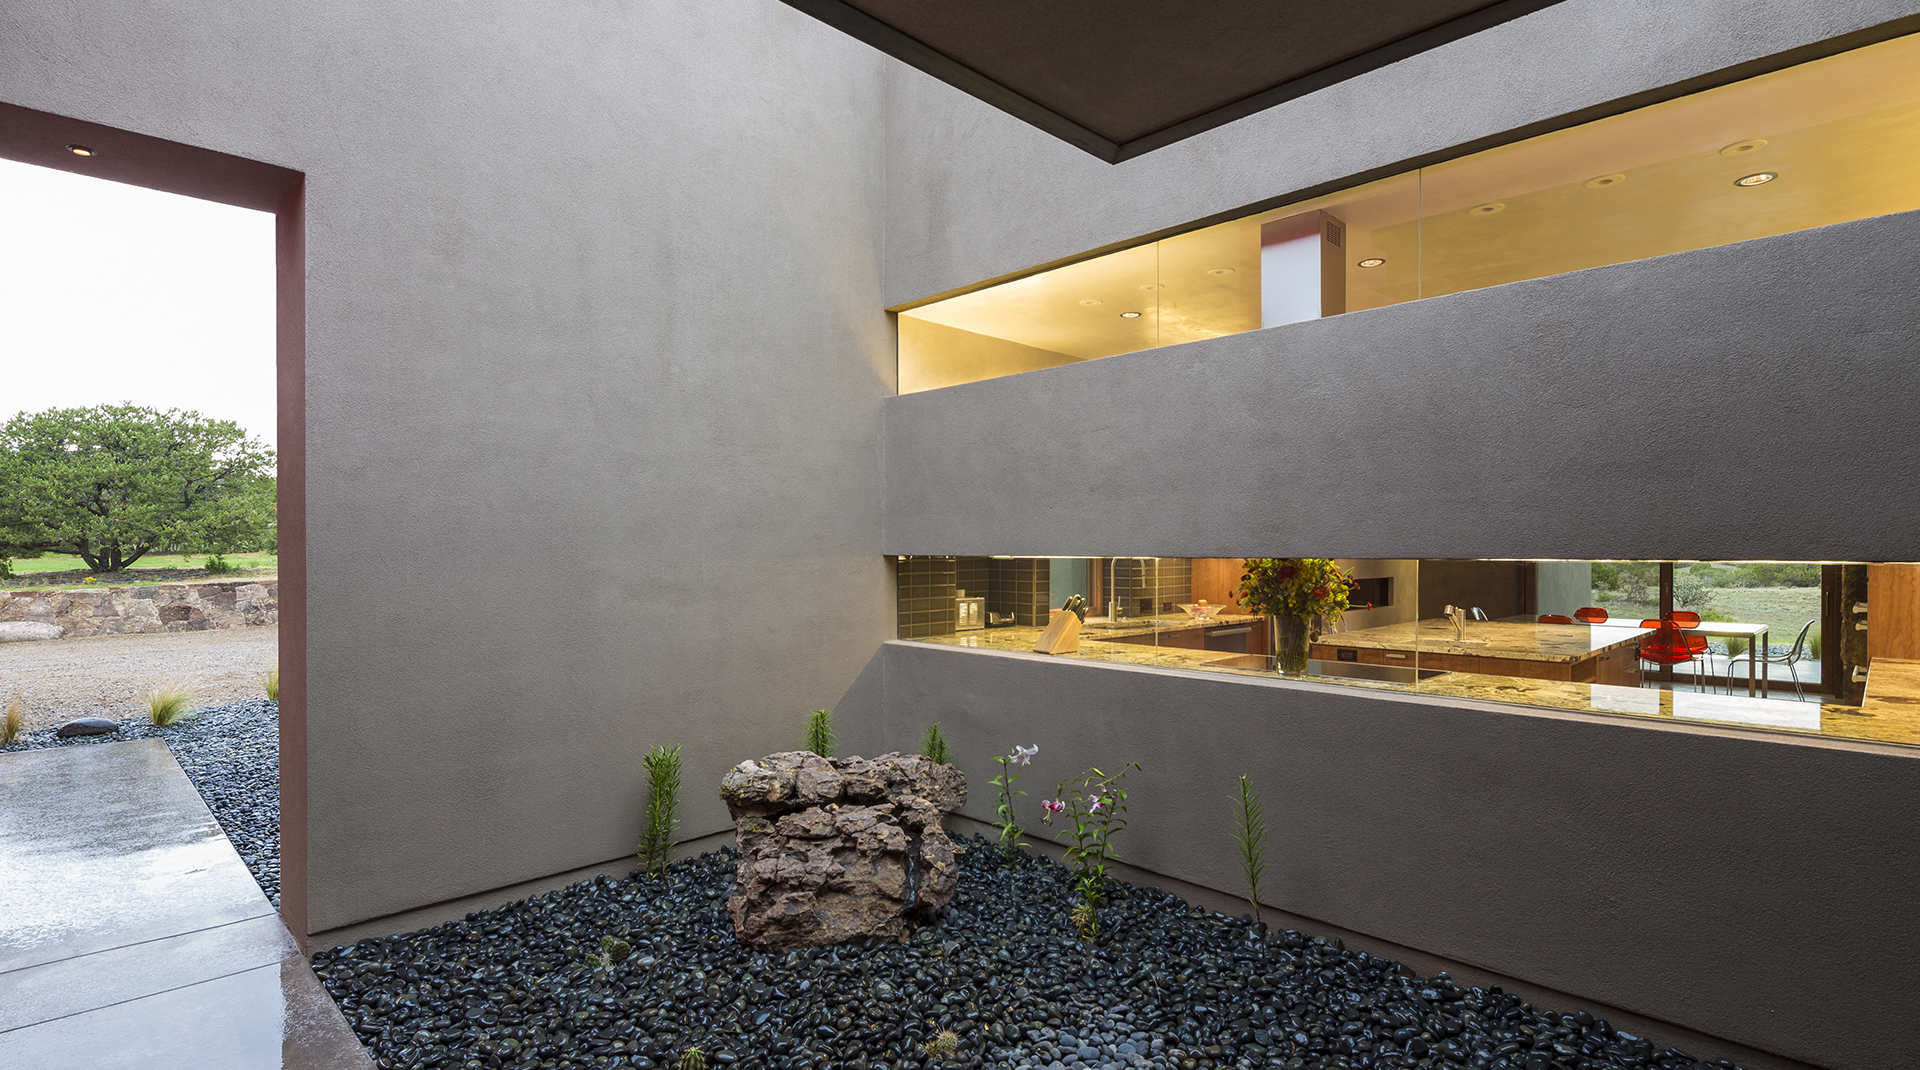 Galisteo - Santa Fe New Mexico Architect Firm